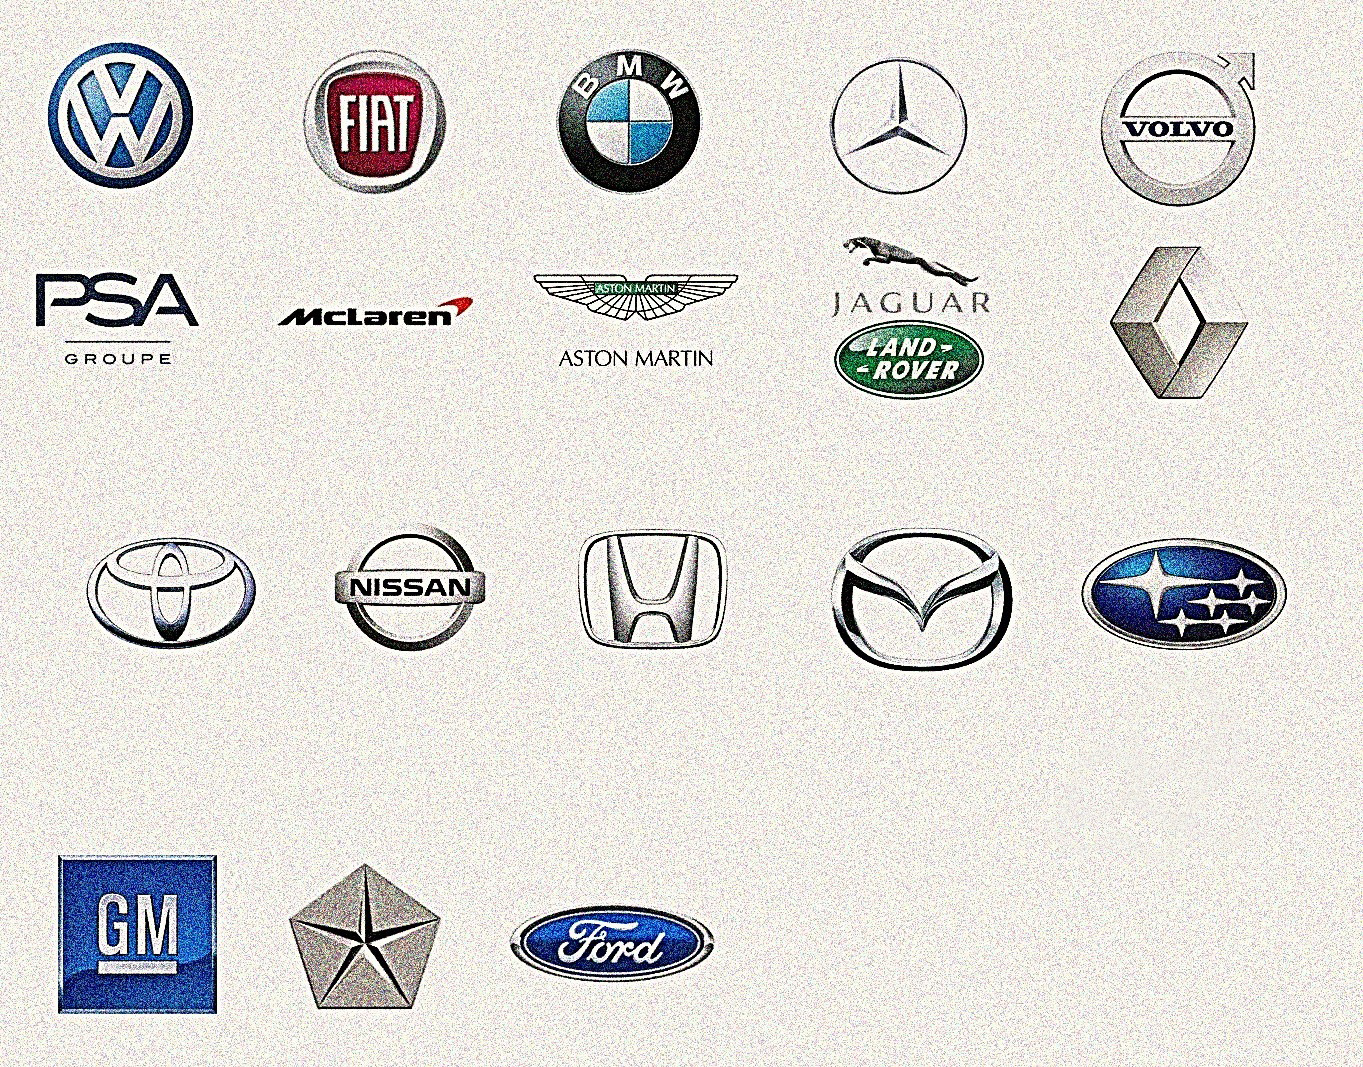 Марки машин и названия на русском языке. Марки автомобилей. Эмблемы автомобилей. Знаки марок автомобилей. Логотипы марок автомобилей.